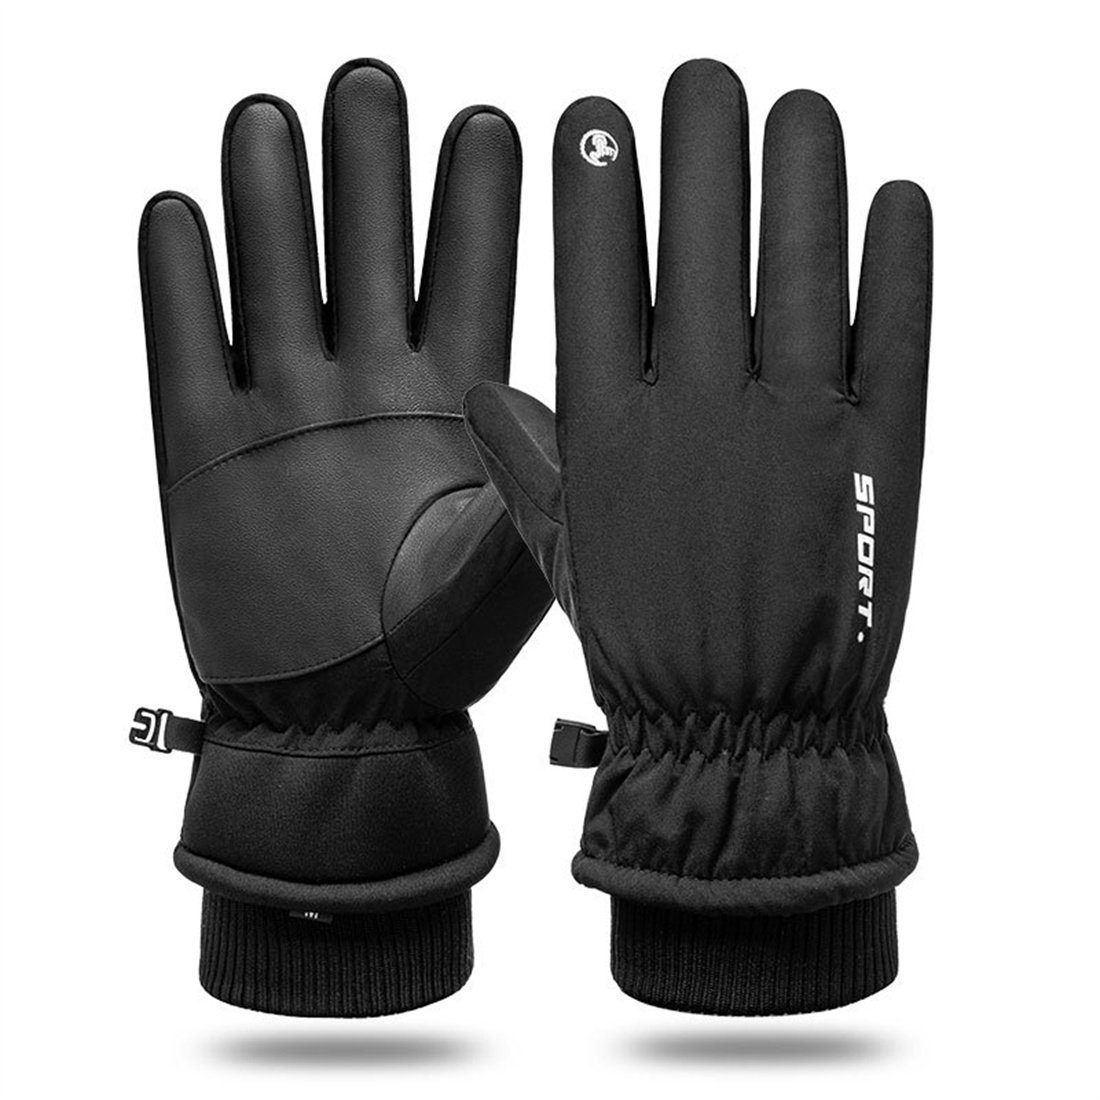 DÖRÖY Skihandschuhe Winddichte mitTouchscreen,unisex Schwarz Handschuhe Winter-Skihandschuhe,warme